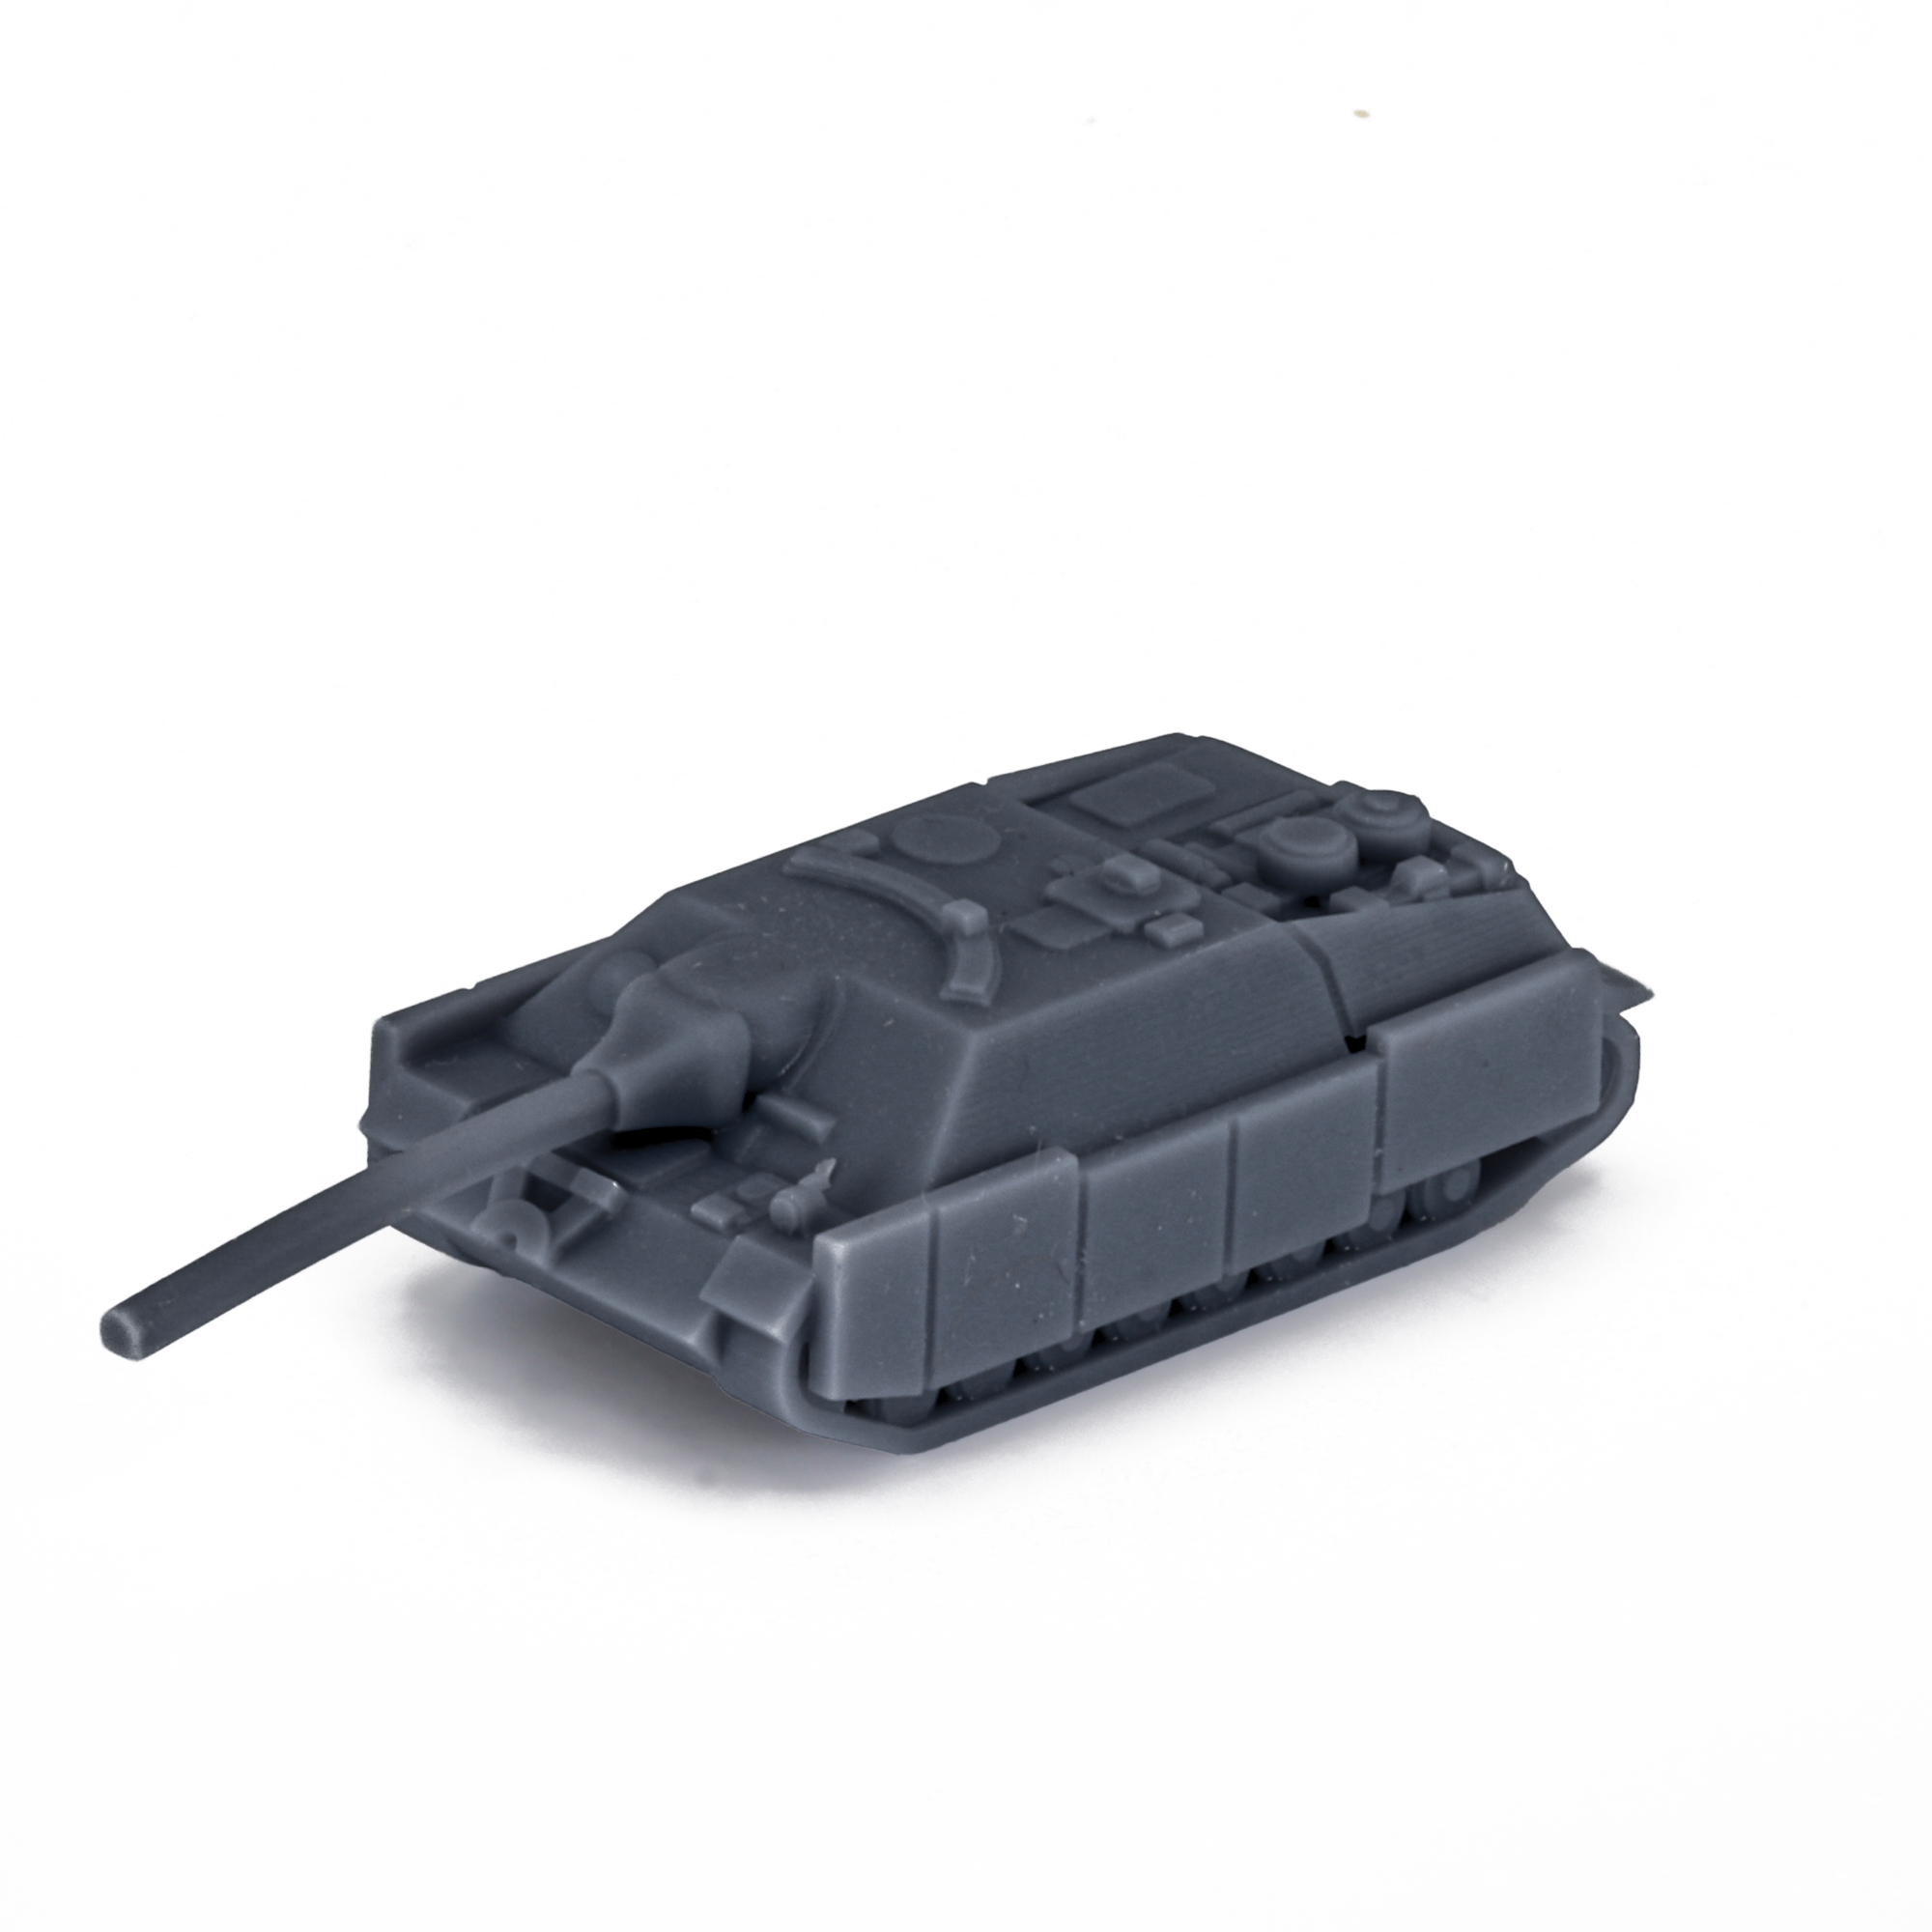 Jagdpanzer IV L70 Schurzen